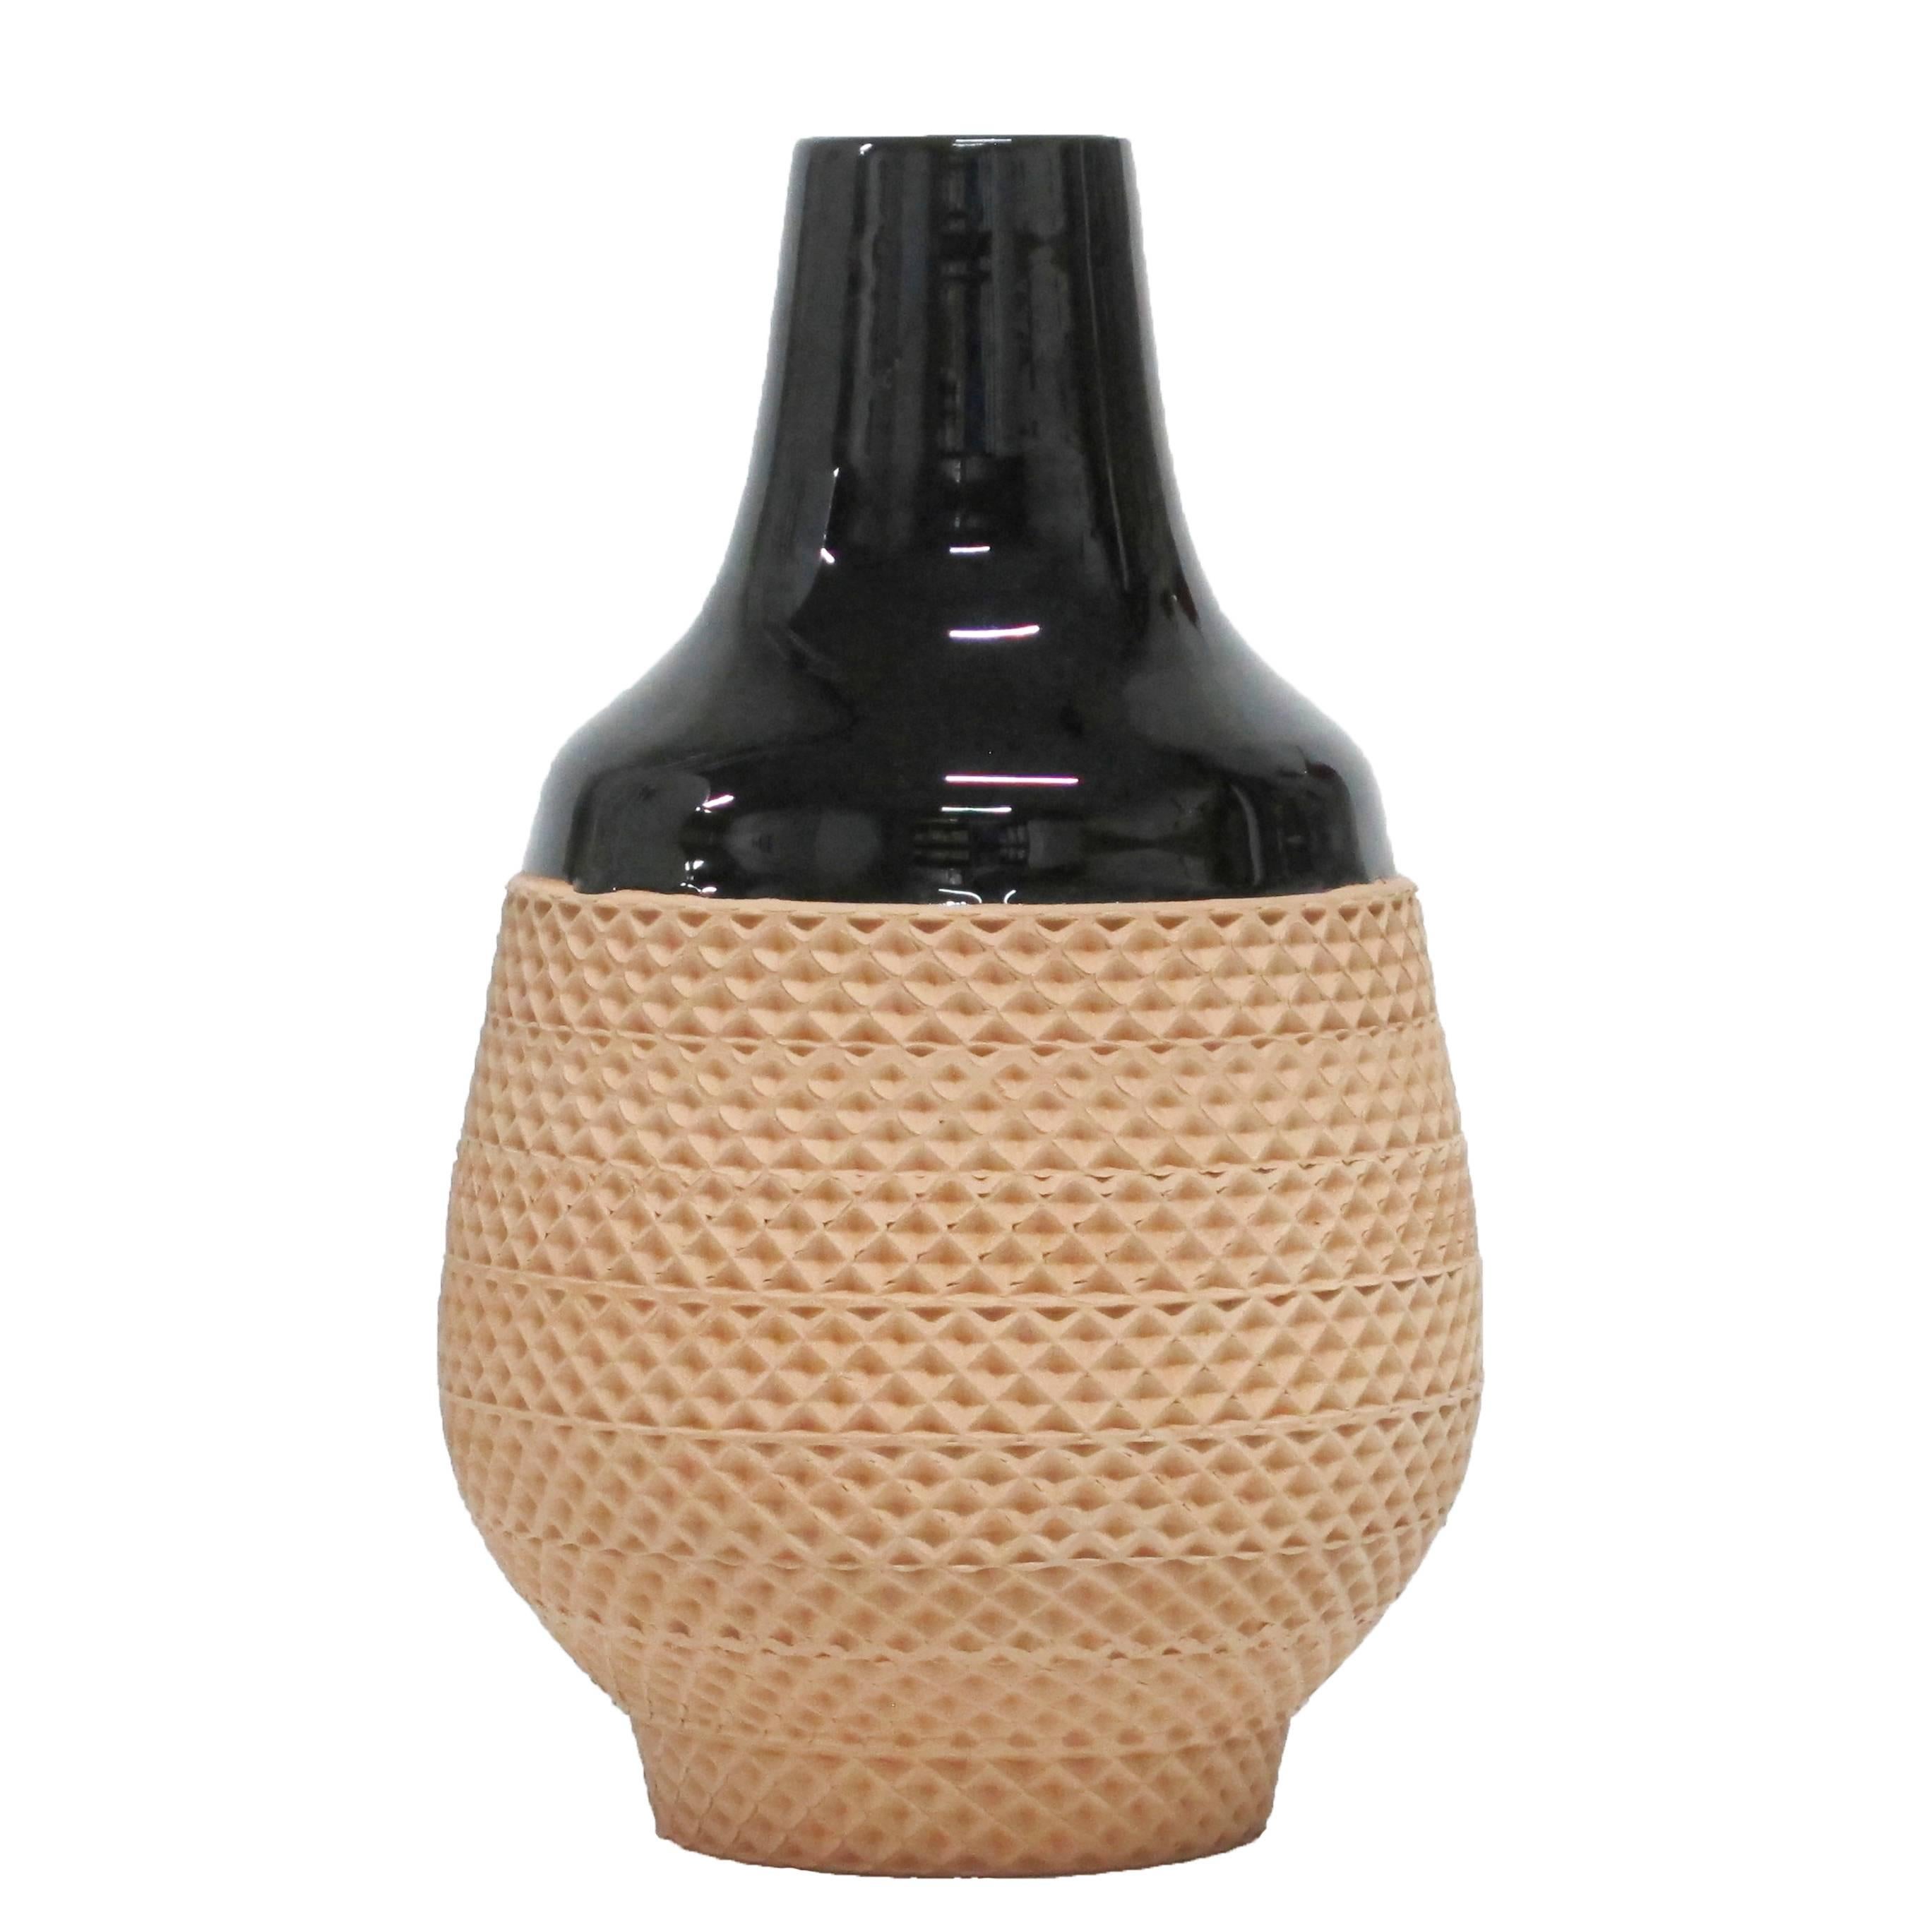 Bitossi Ceramic Vase Black Terracotta Impressed Textured Signed, Italy, 1970s